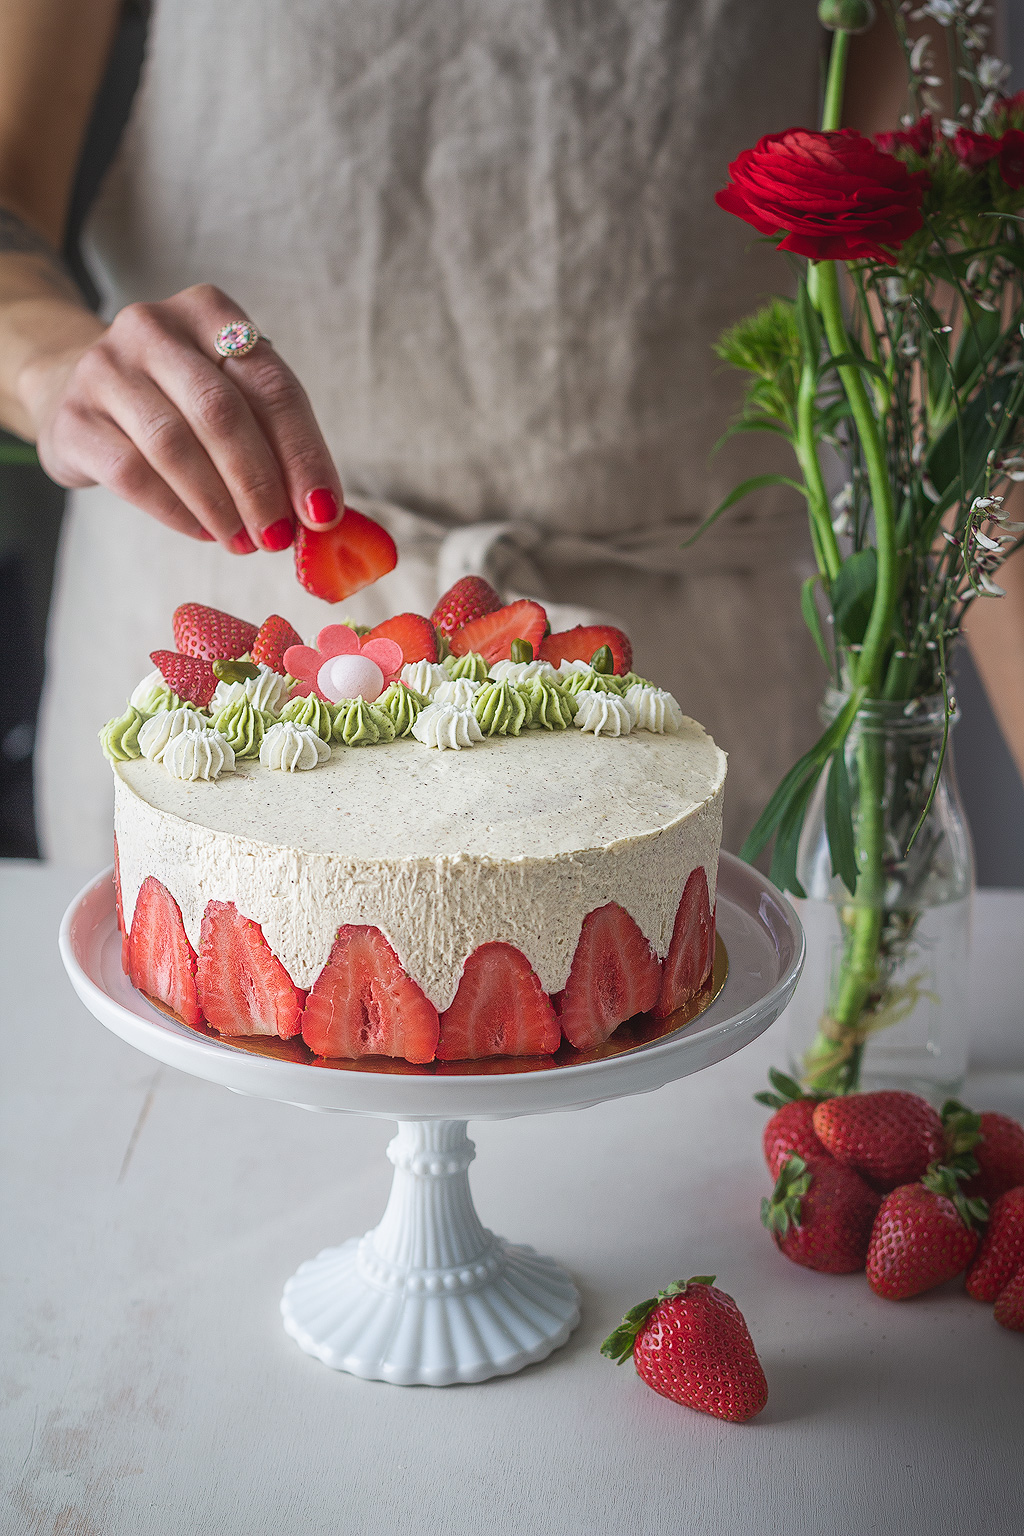 Recette d'un gâteau fraisier rhubarbe